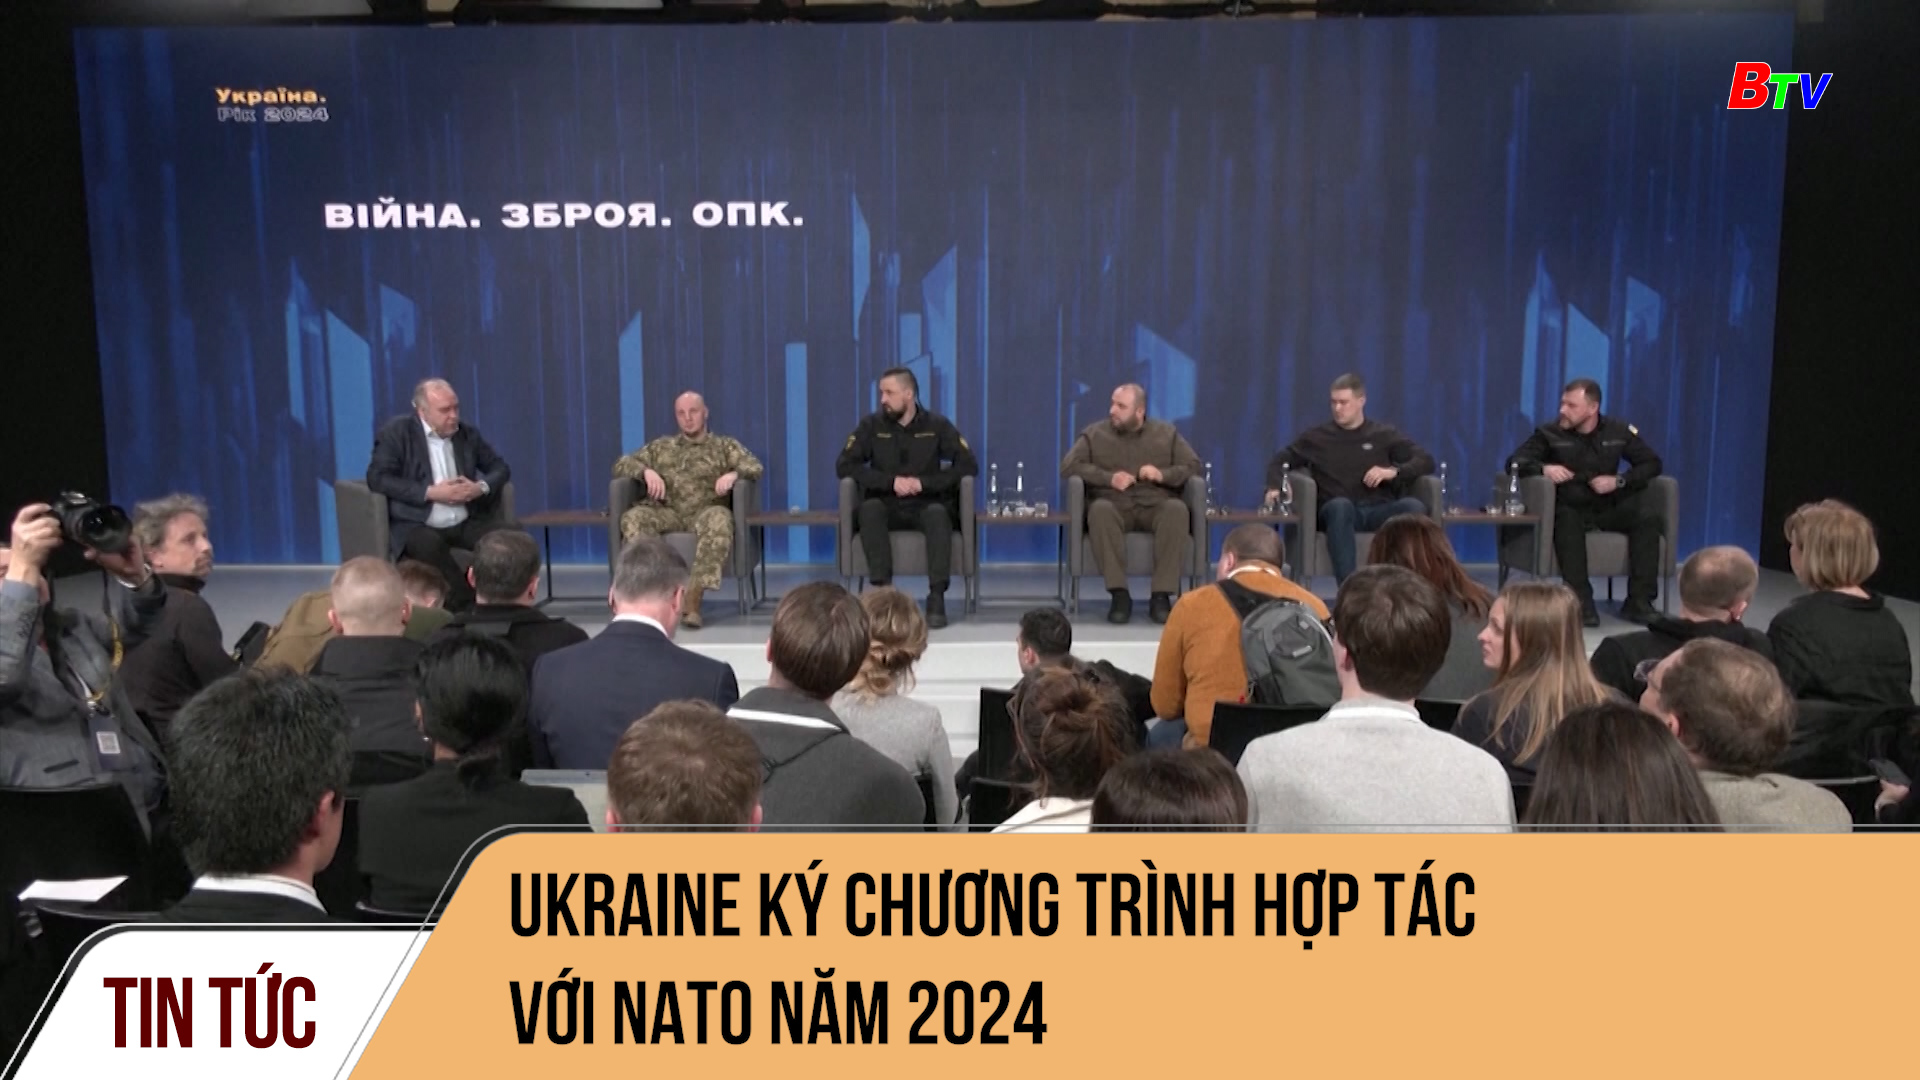 Ukraine ký Chương trình hợp tác với NATO năm 2024